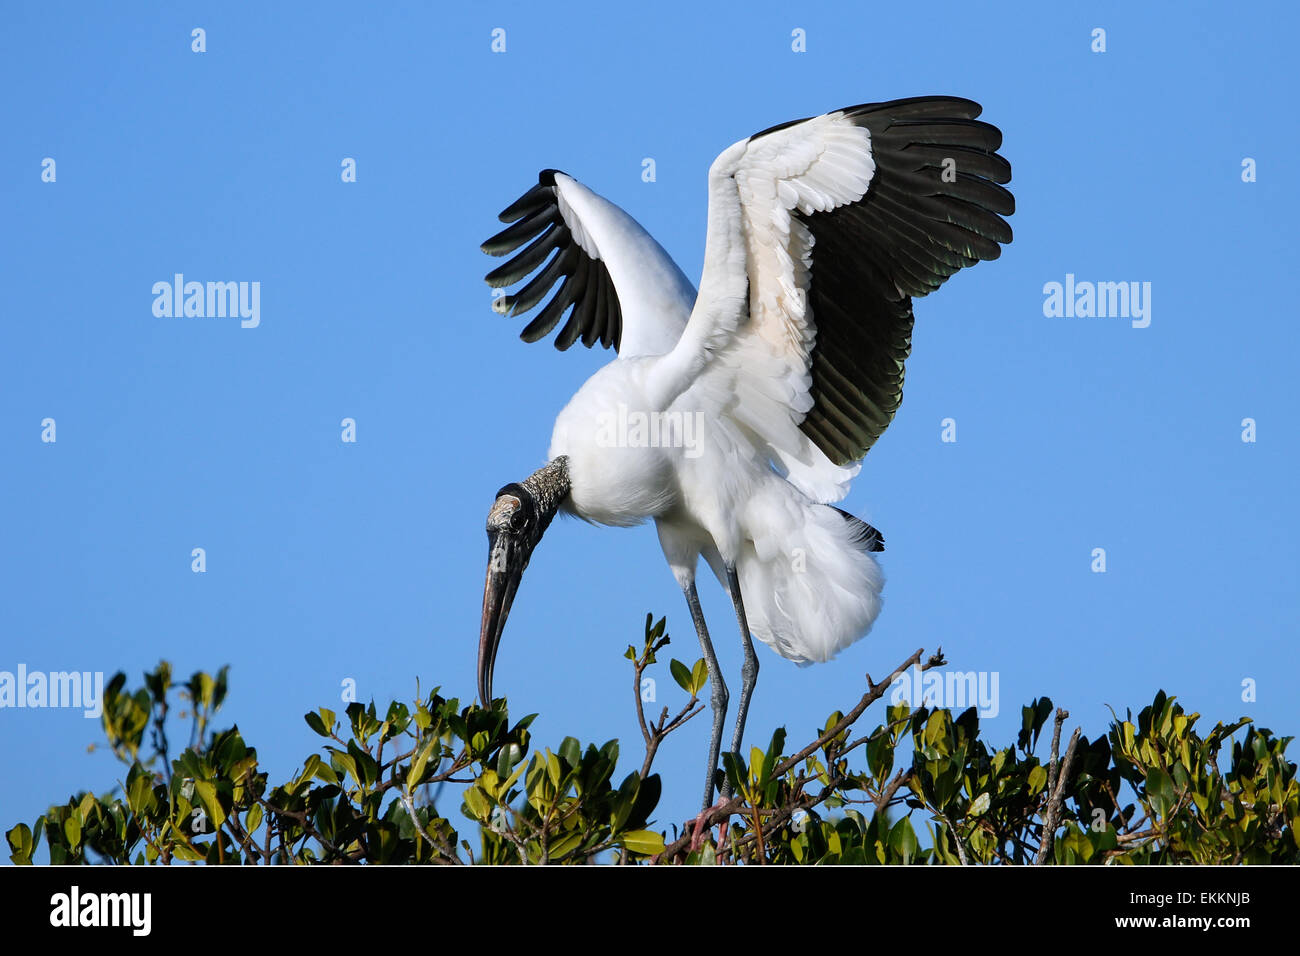 Wood stork (Mycteria americana) spreading wings Stock Photo